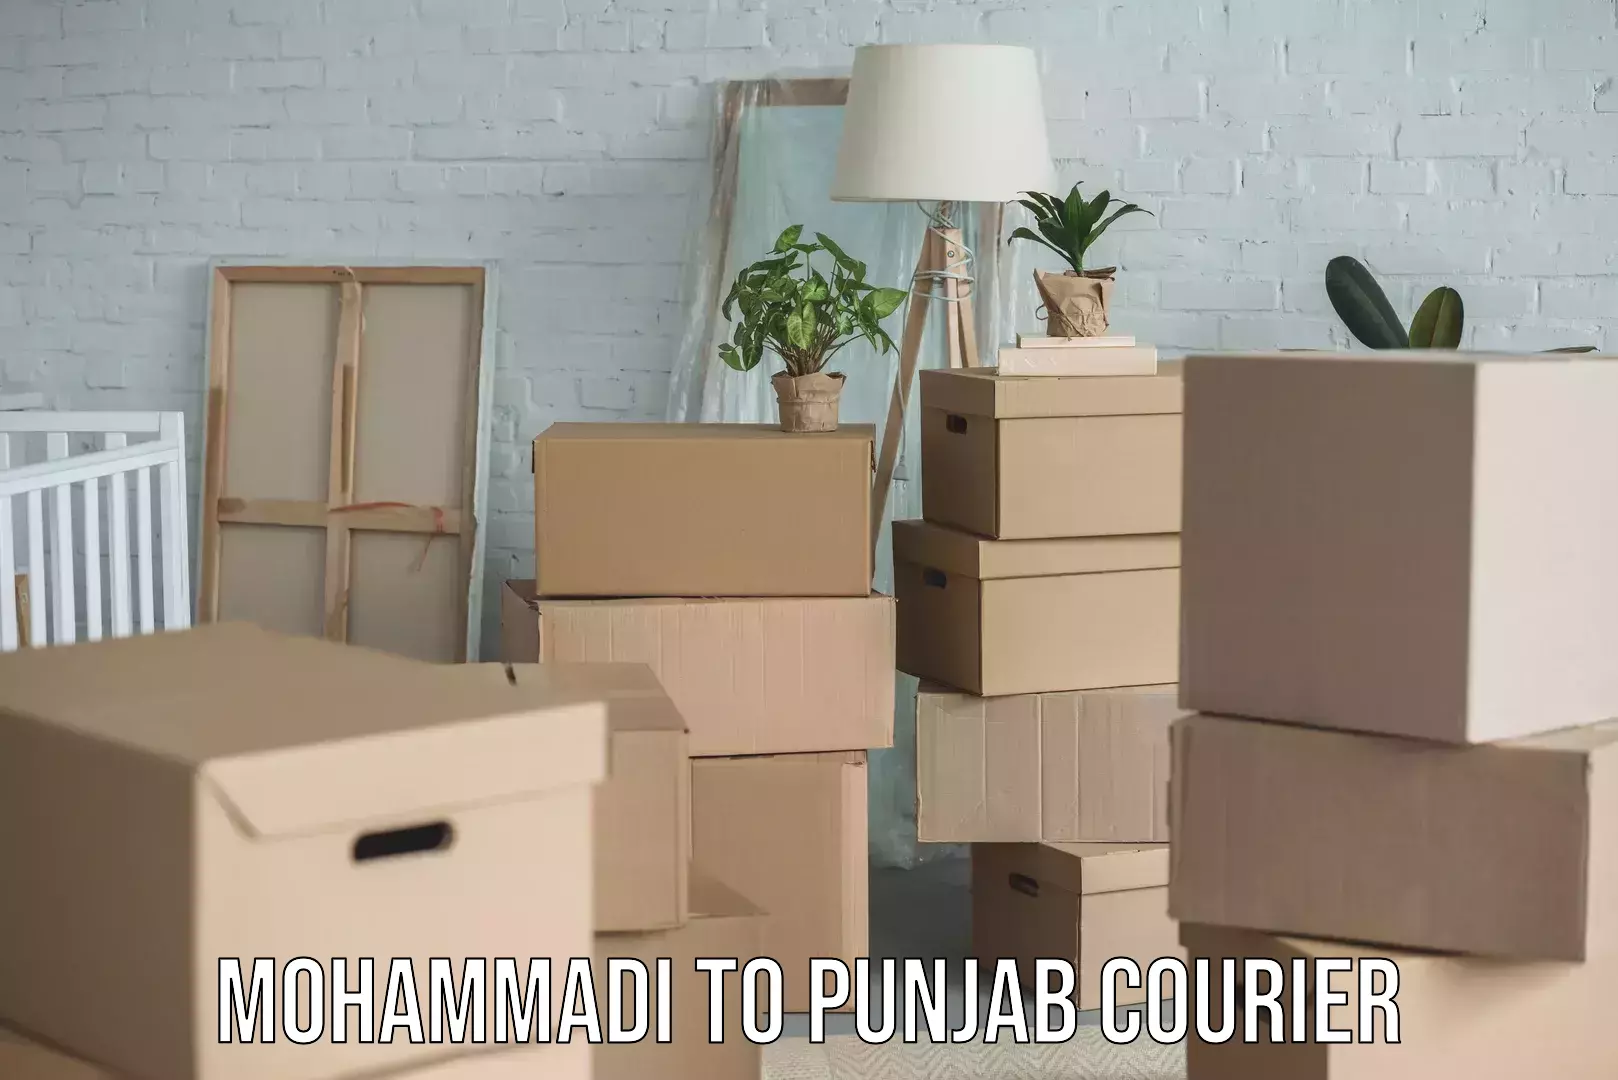 Furniture transport service in Mohammadi to Punjab